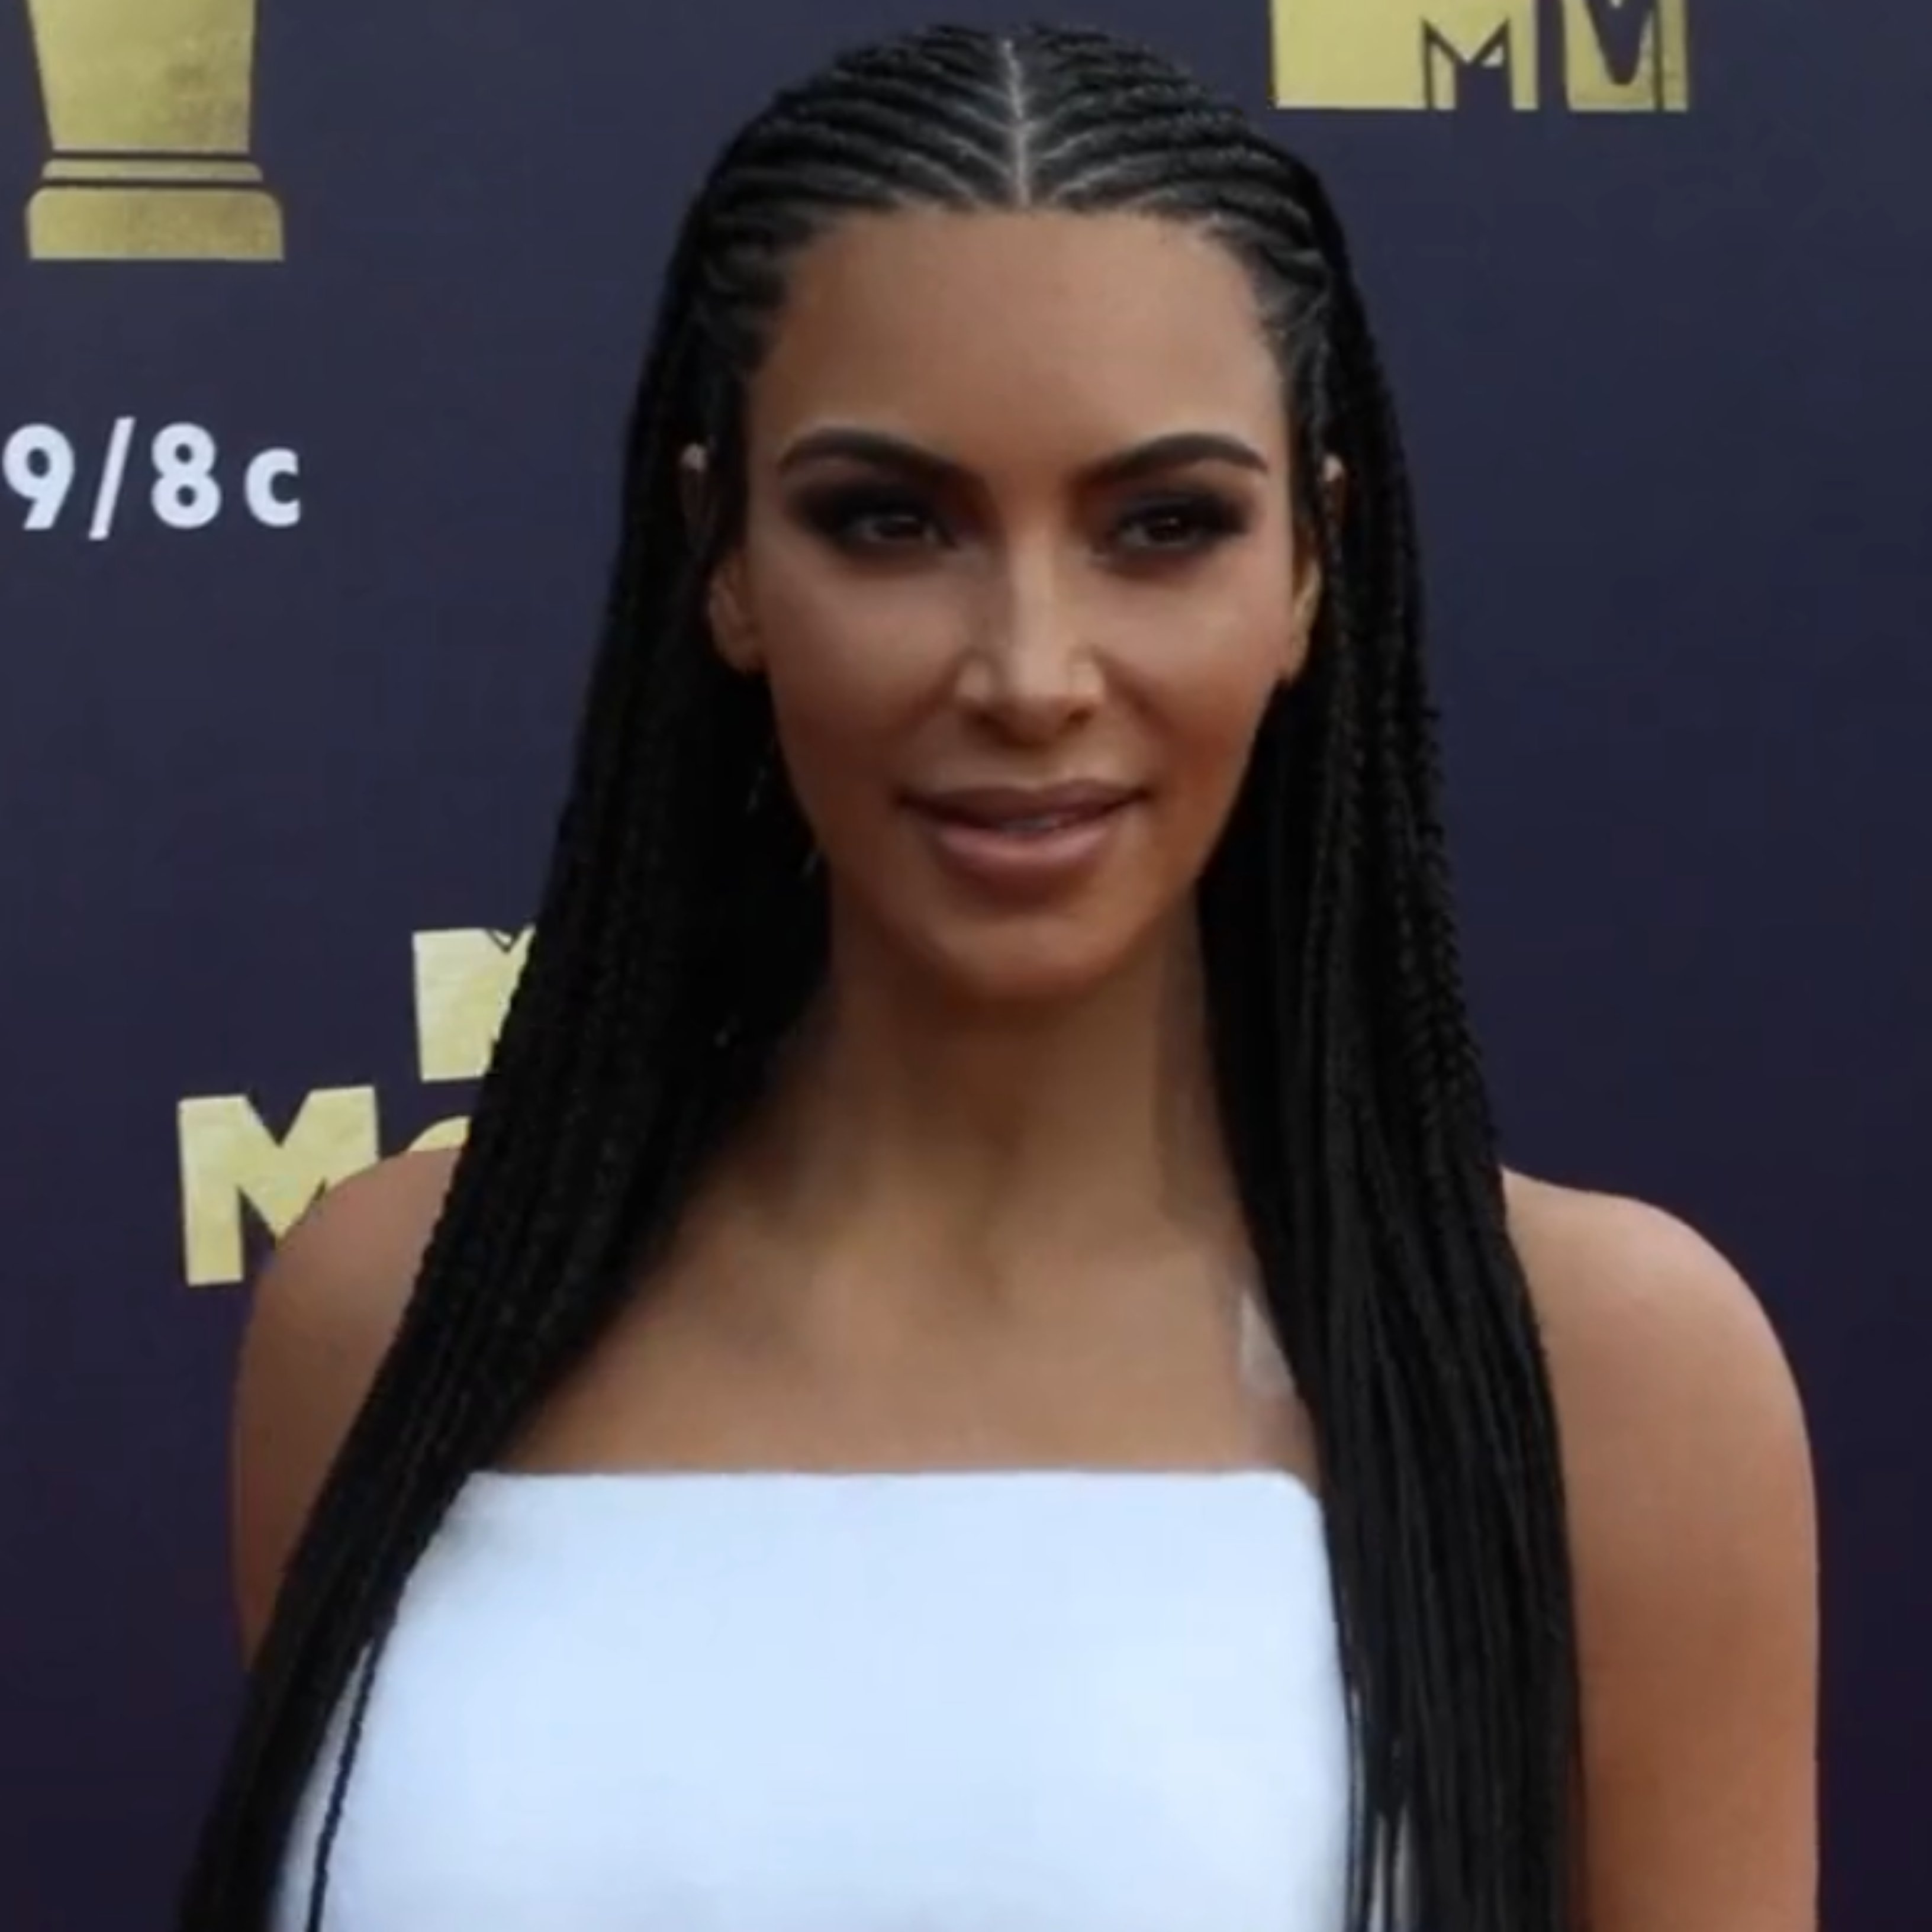 Sigue los pasos de Kim Kardashian y pide el divorcio sólo 1 año después de casarse en Hollywood